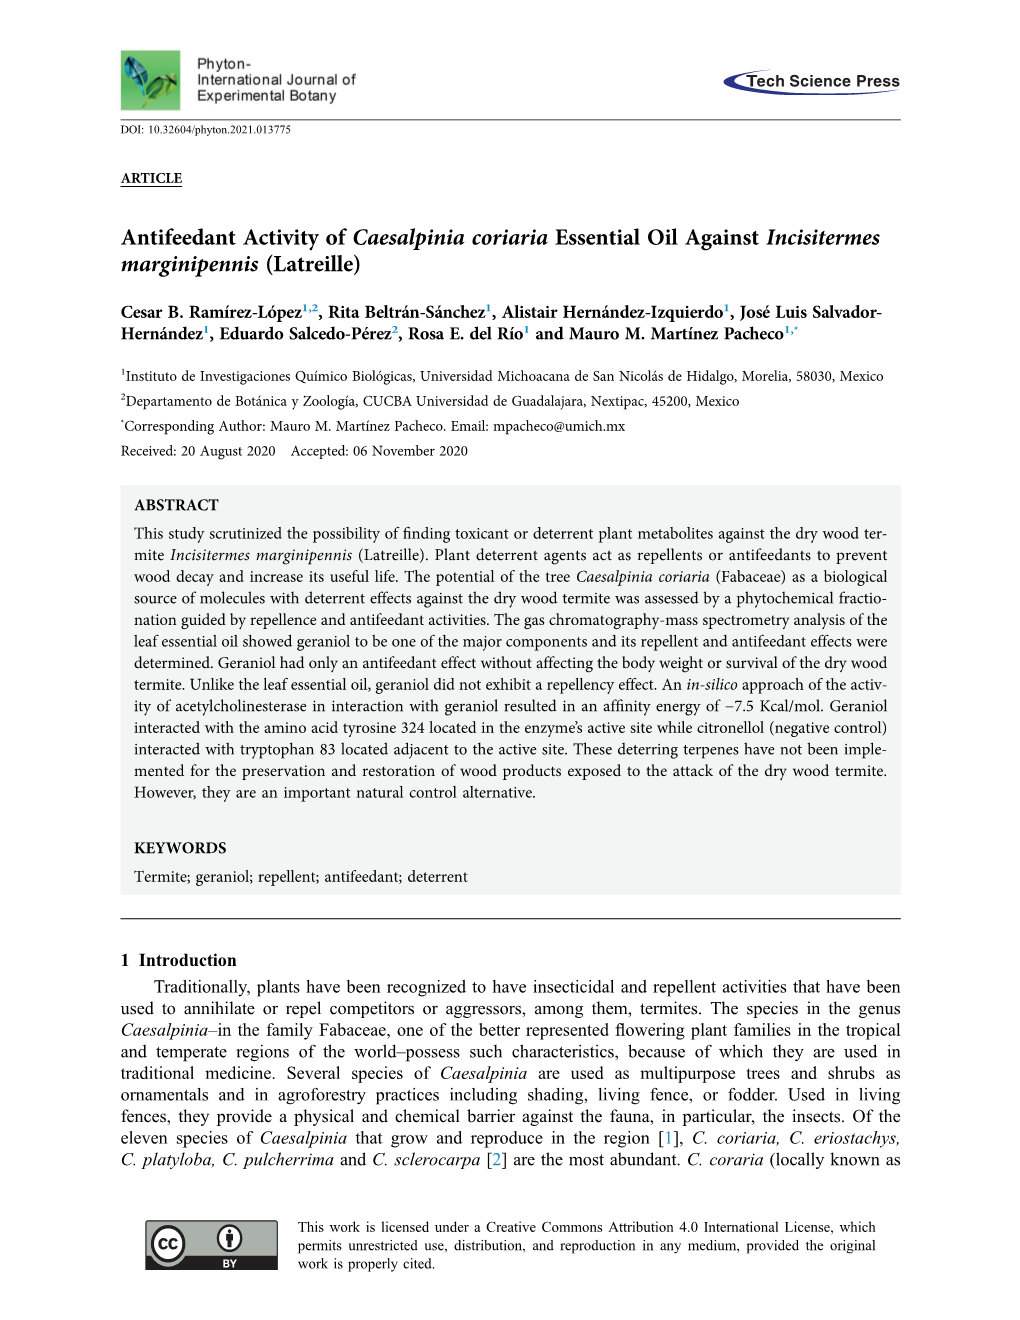 Antifeedant Activity of Caesalpinia Coriaria Essential Oil Against Incisitermes Marginipennis (Latreille)